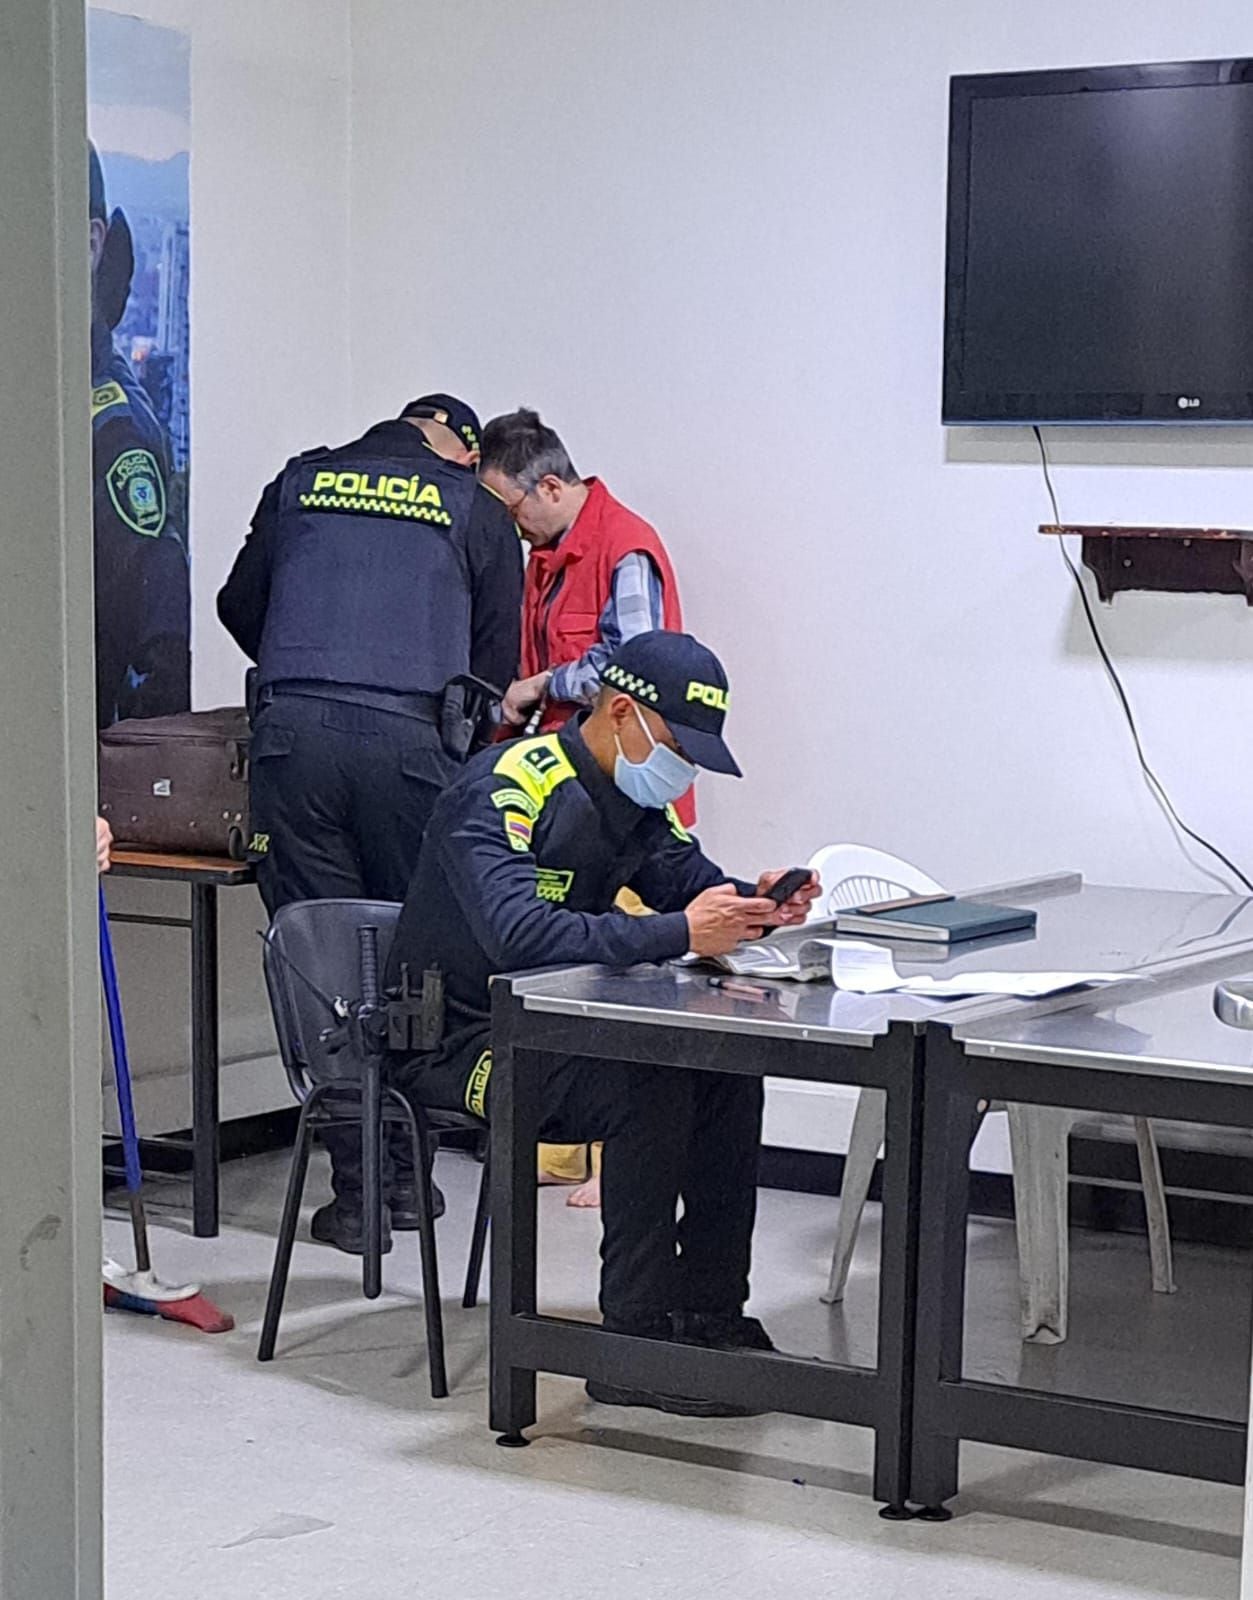 Pasajero italiano agrede a funcionarias de Avianca en el aeropuerto El Dorado; las atacó con un teclaro tras negarle el embarque por documentación incompleta